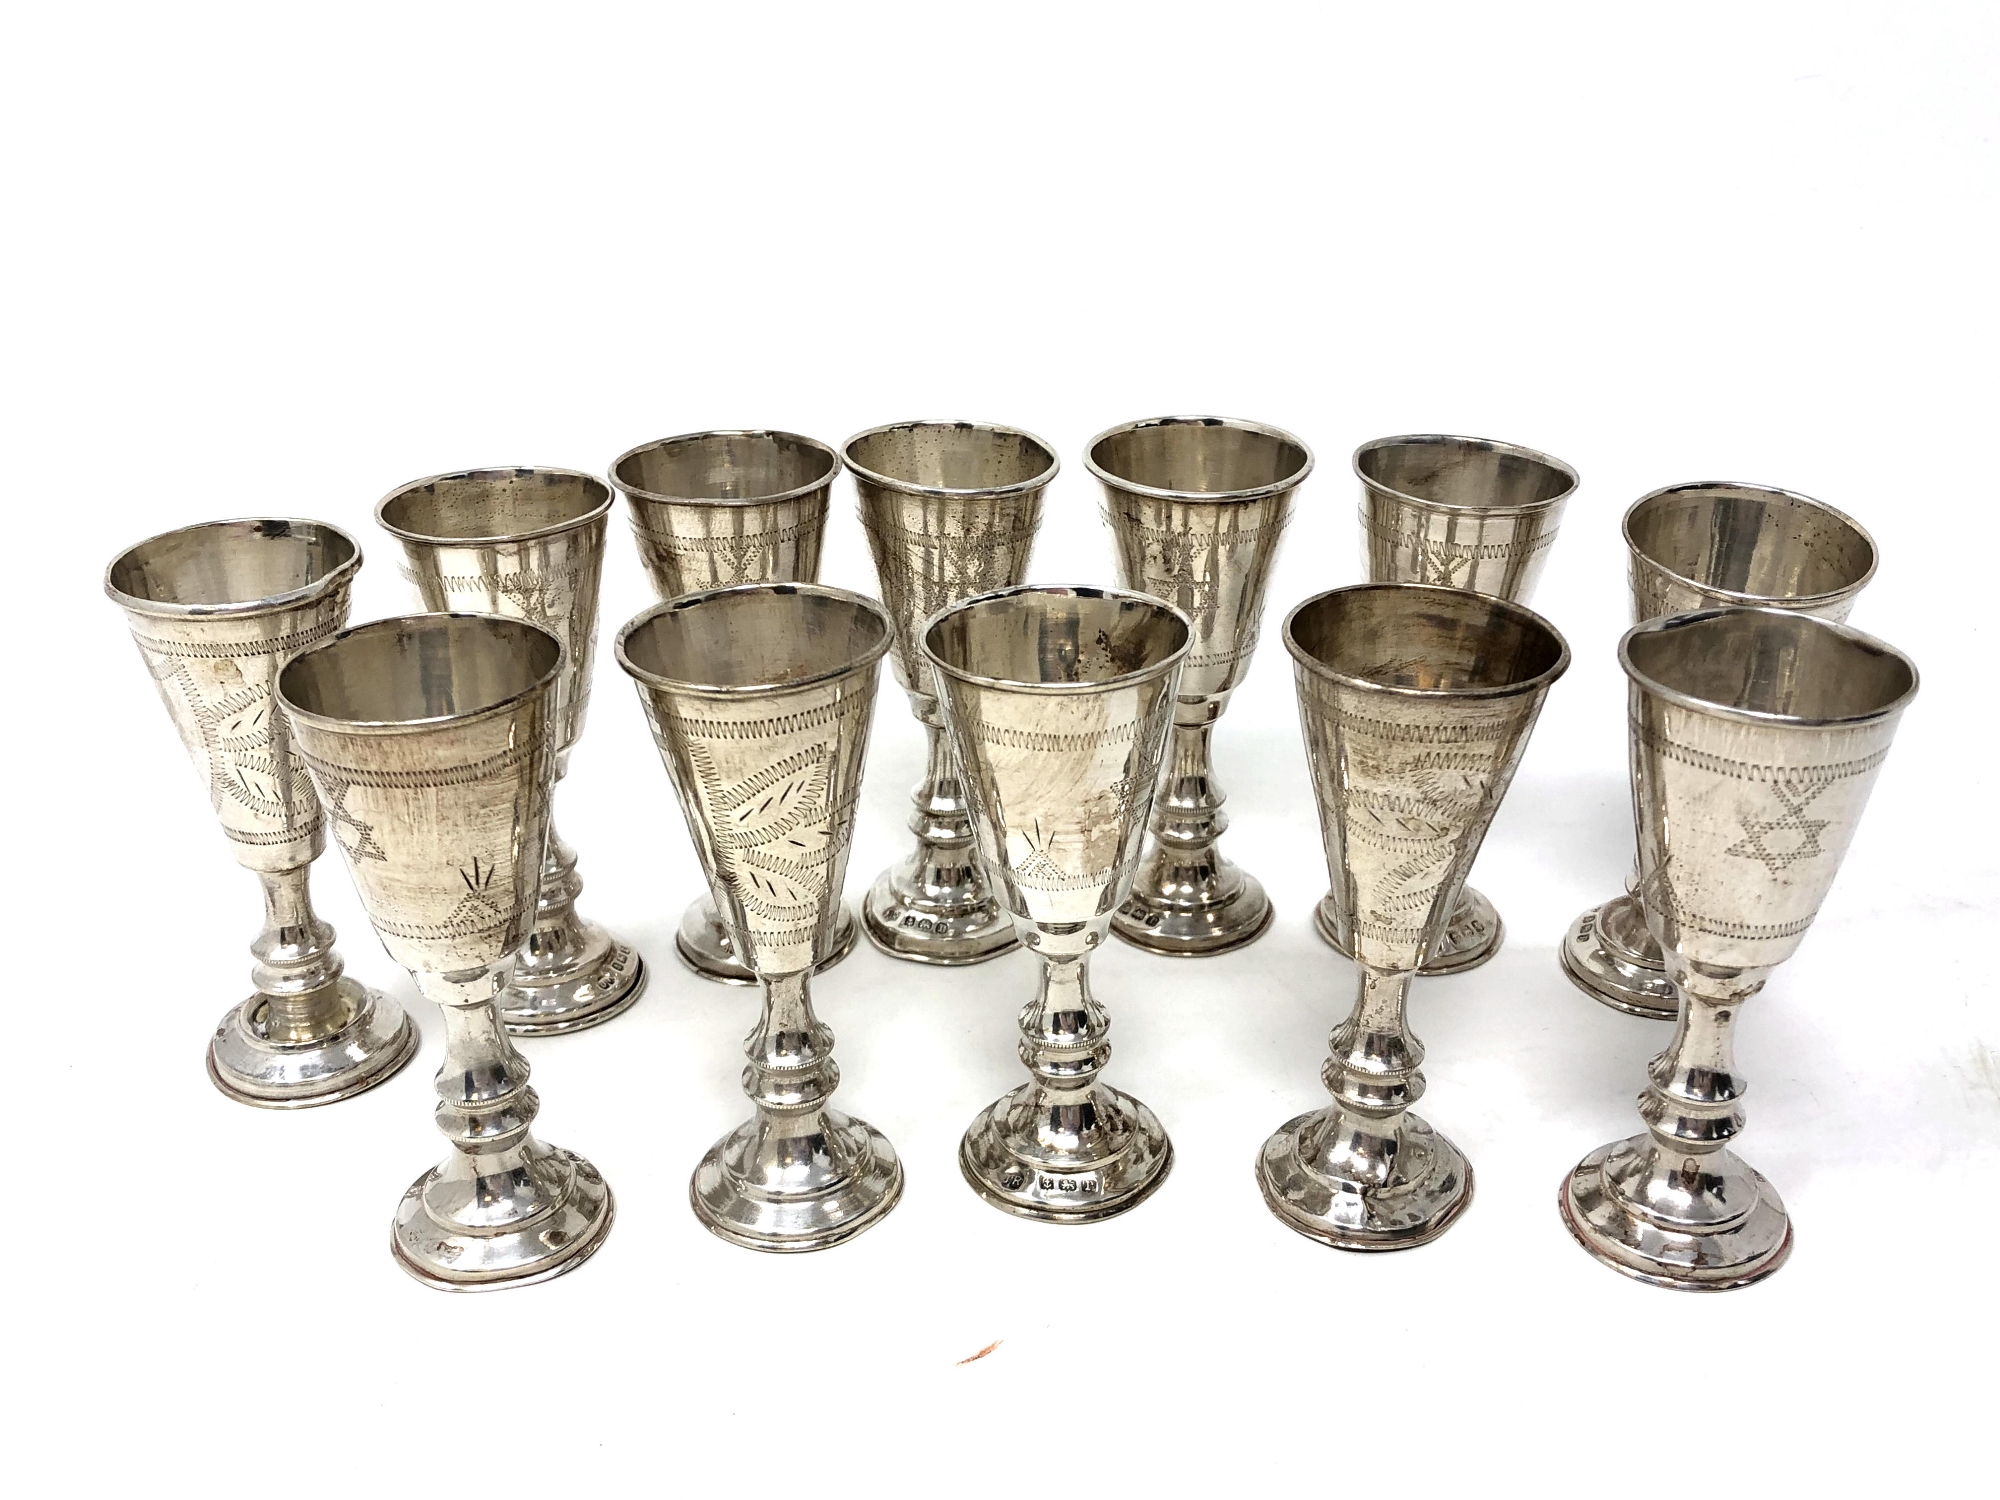 Twelve silver miniature Kiddush cups